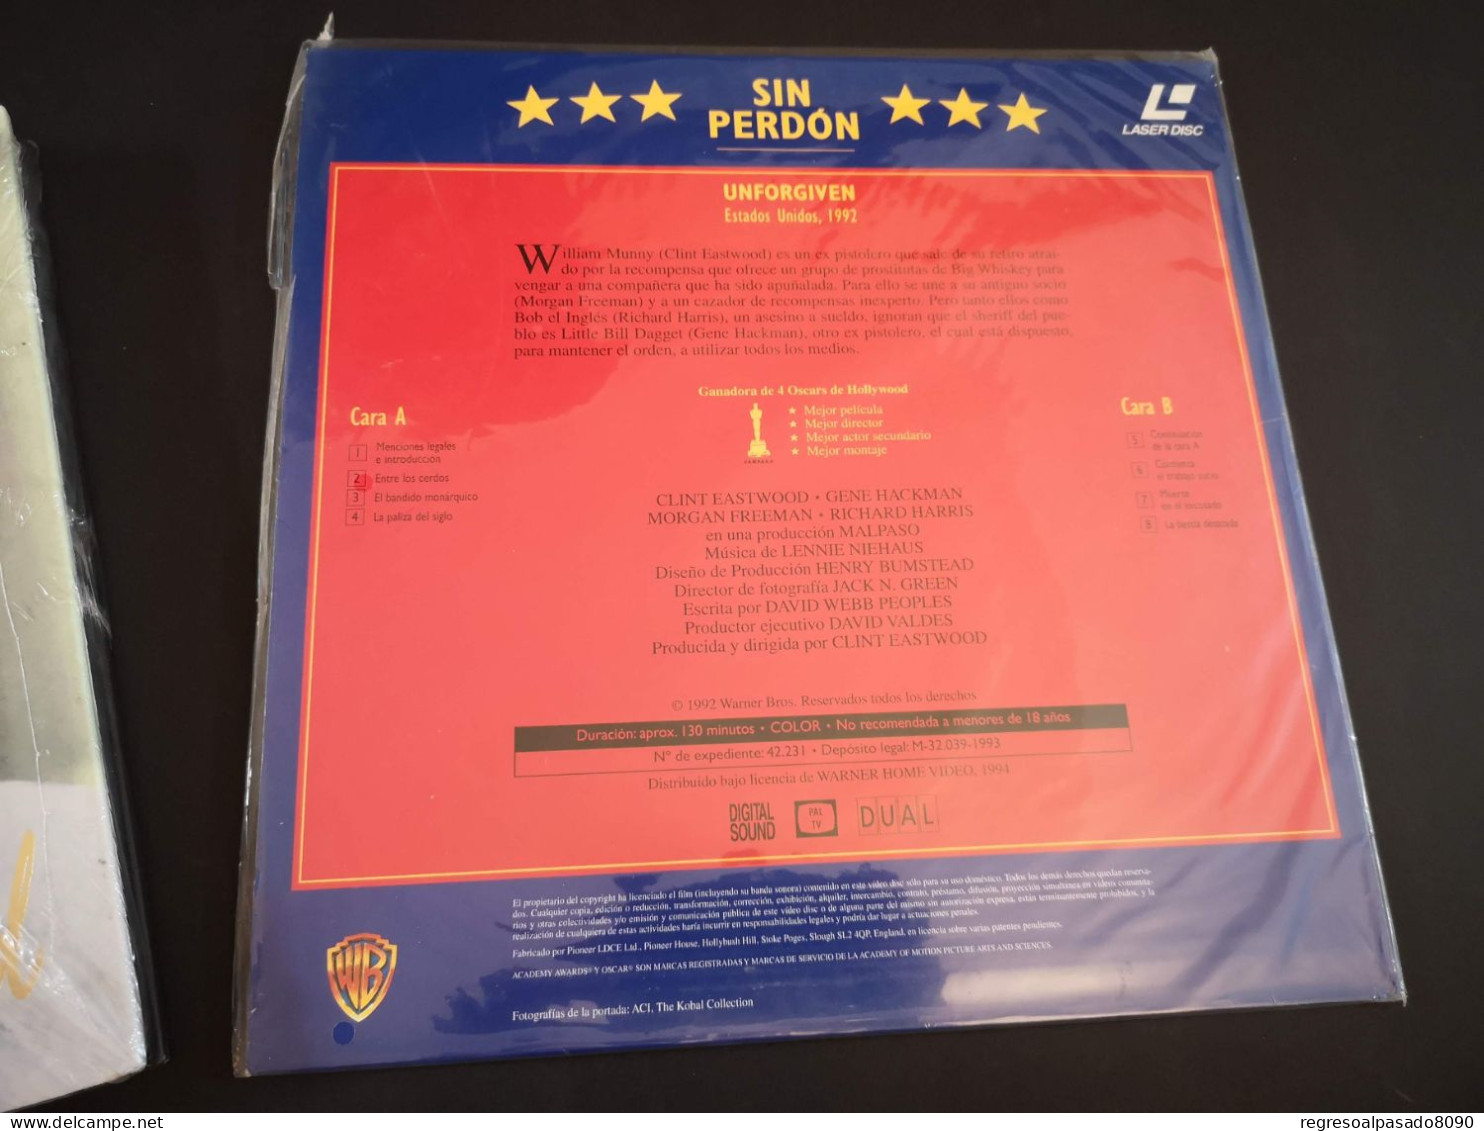 Klint Eastwood Libro Y Película Laser Disc Laserdisc Sin Perdón. Colección Mitos Del Cine Planeta Años 90 - Klassiker